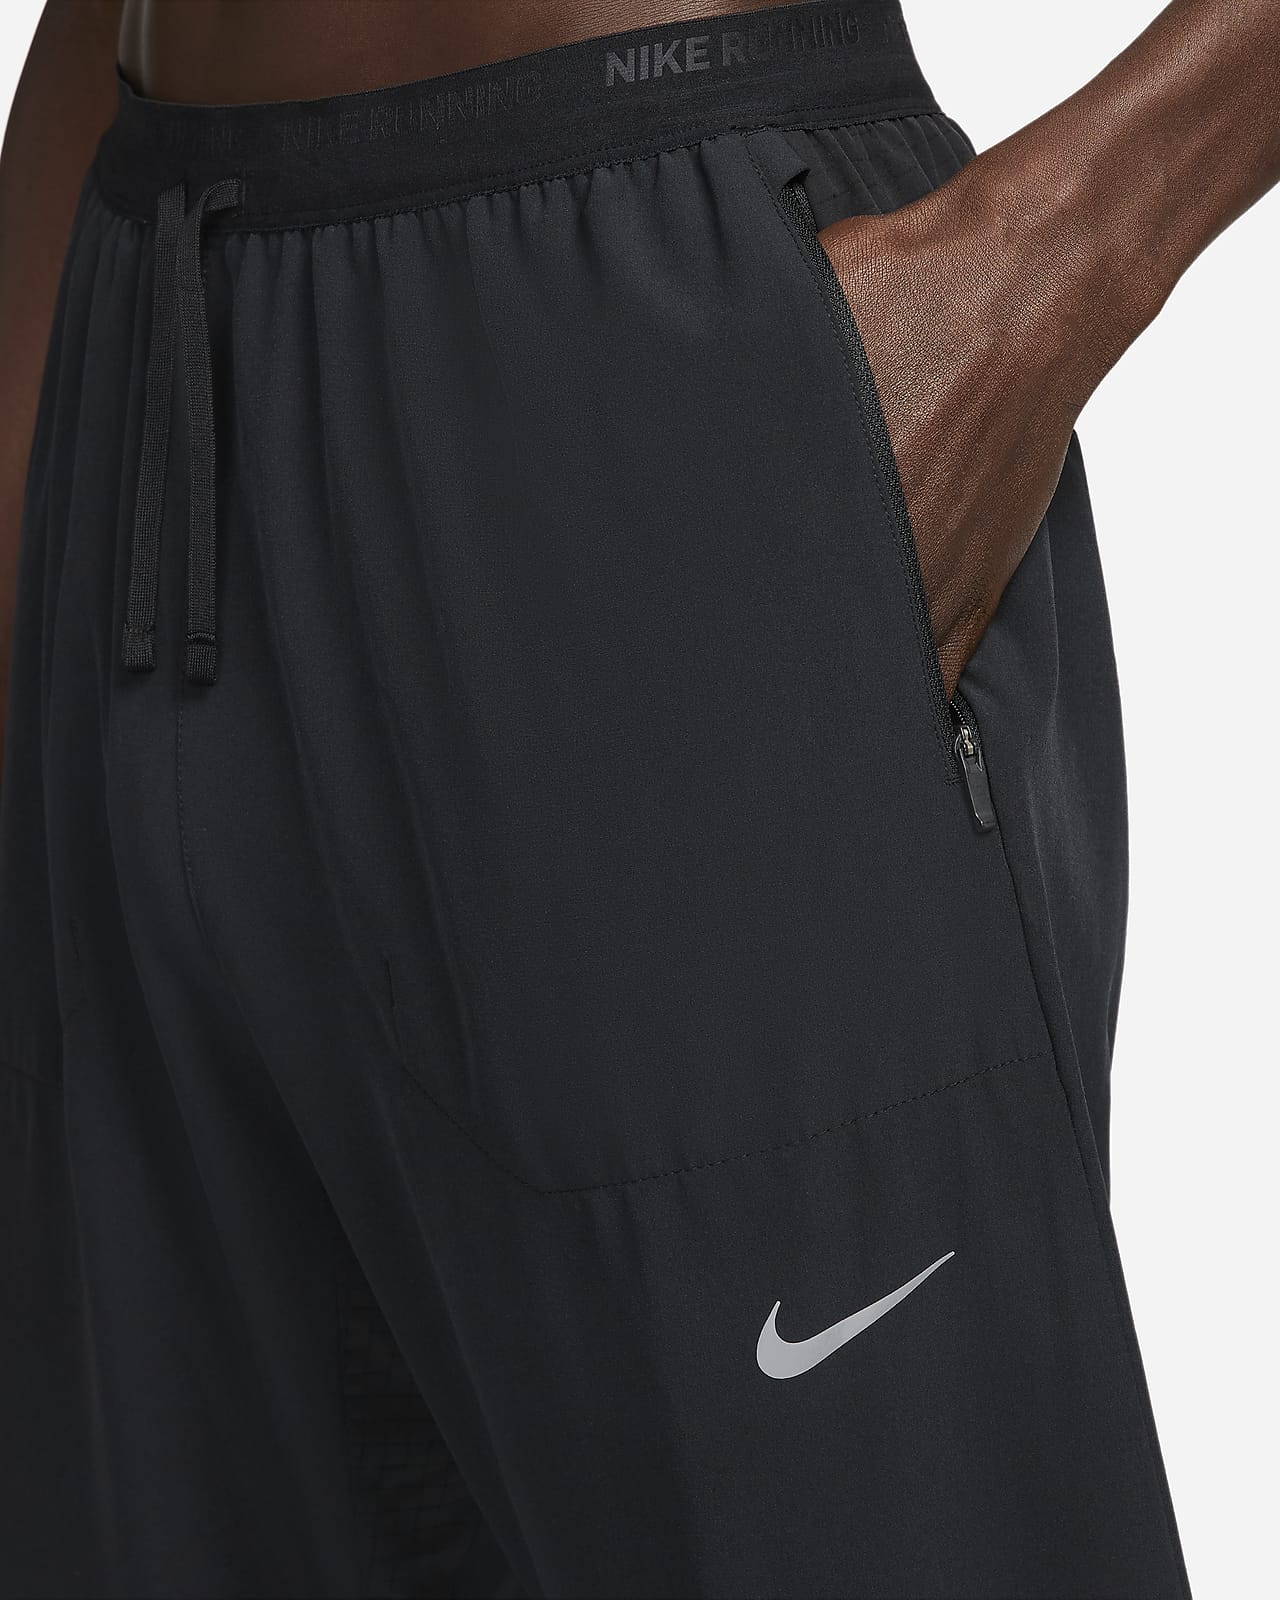 Nike Phenom Elite Men's Woven Running Trousers